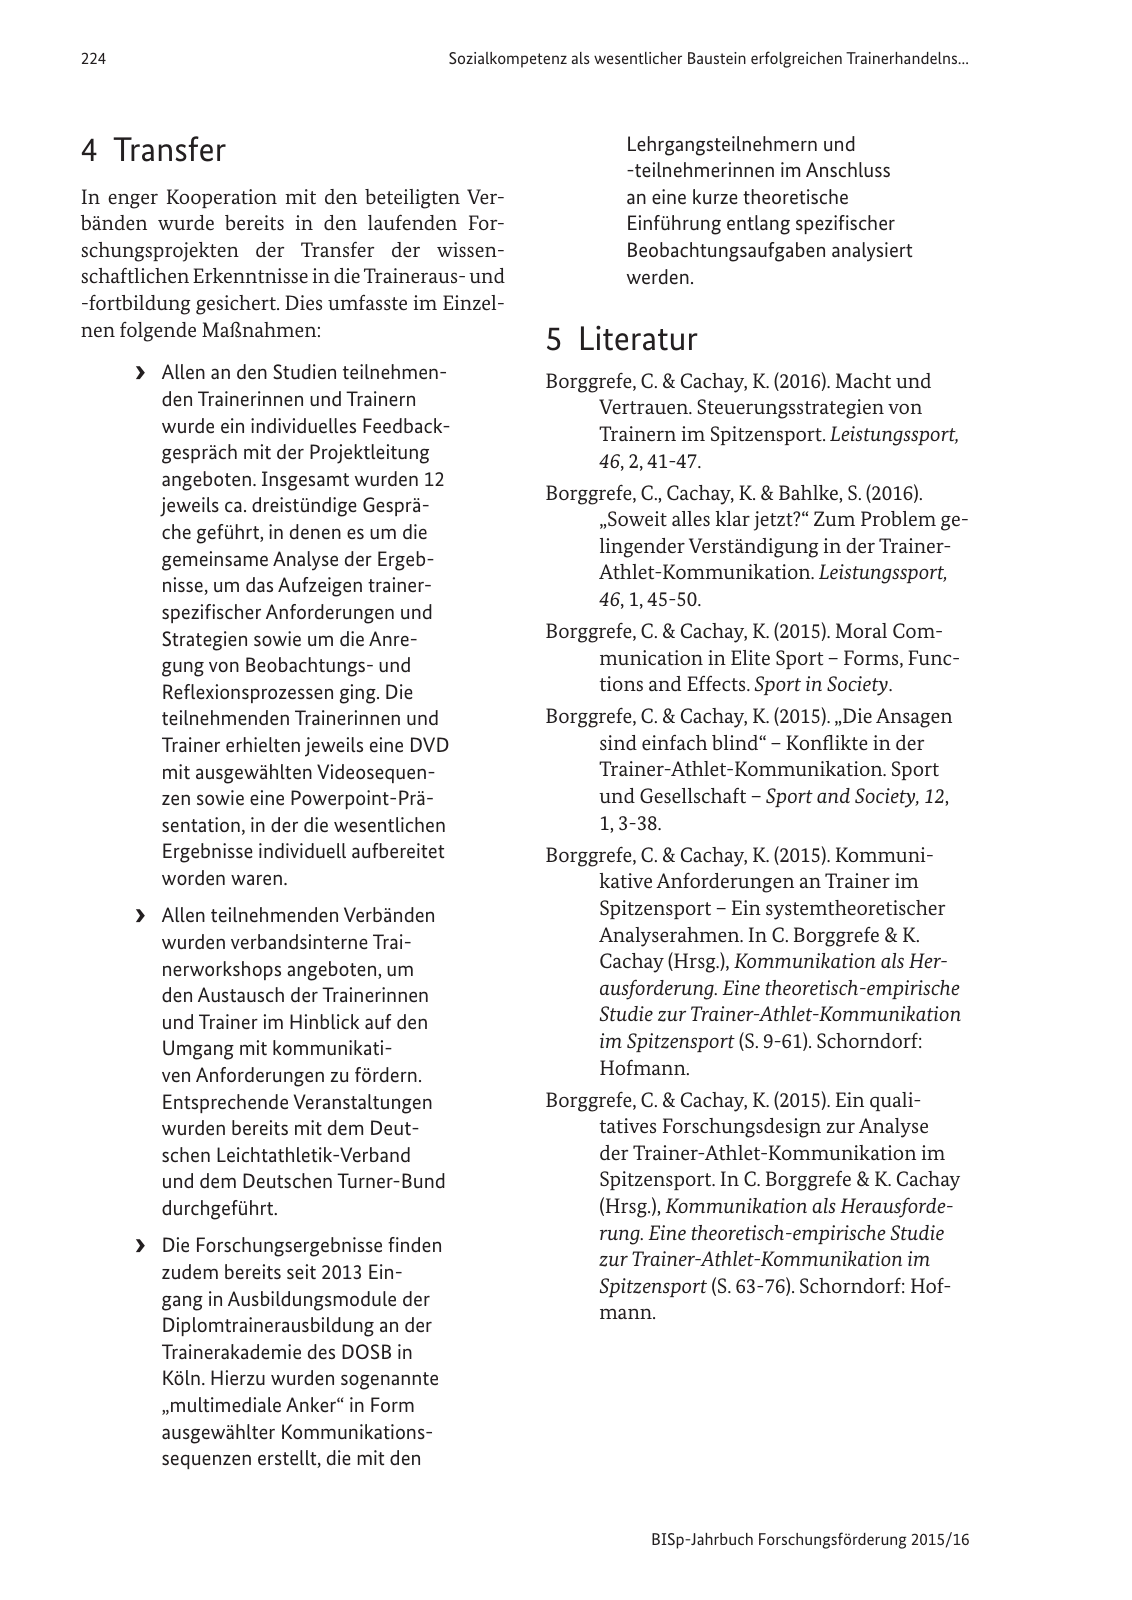 Vorschau BISp-Jahrbuch Forschungsförderung 2015/16 Seite 226